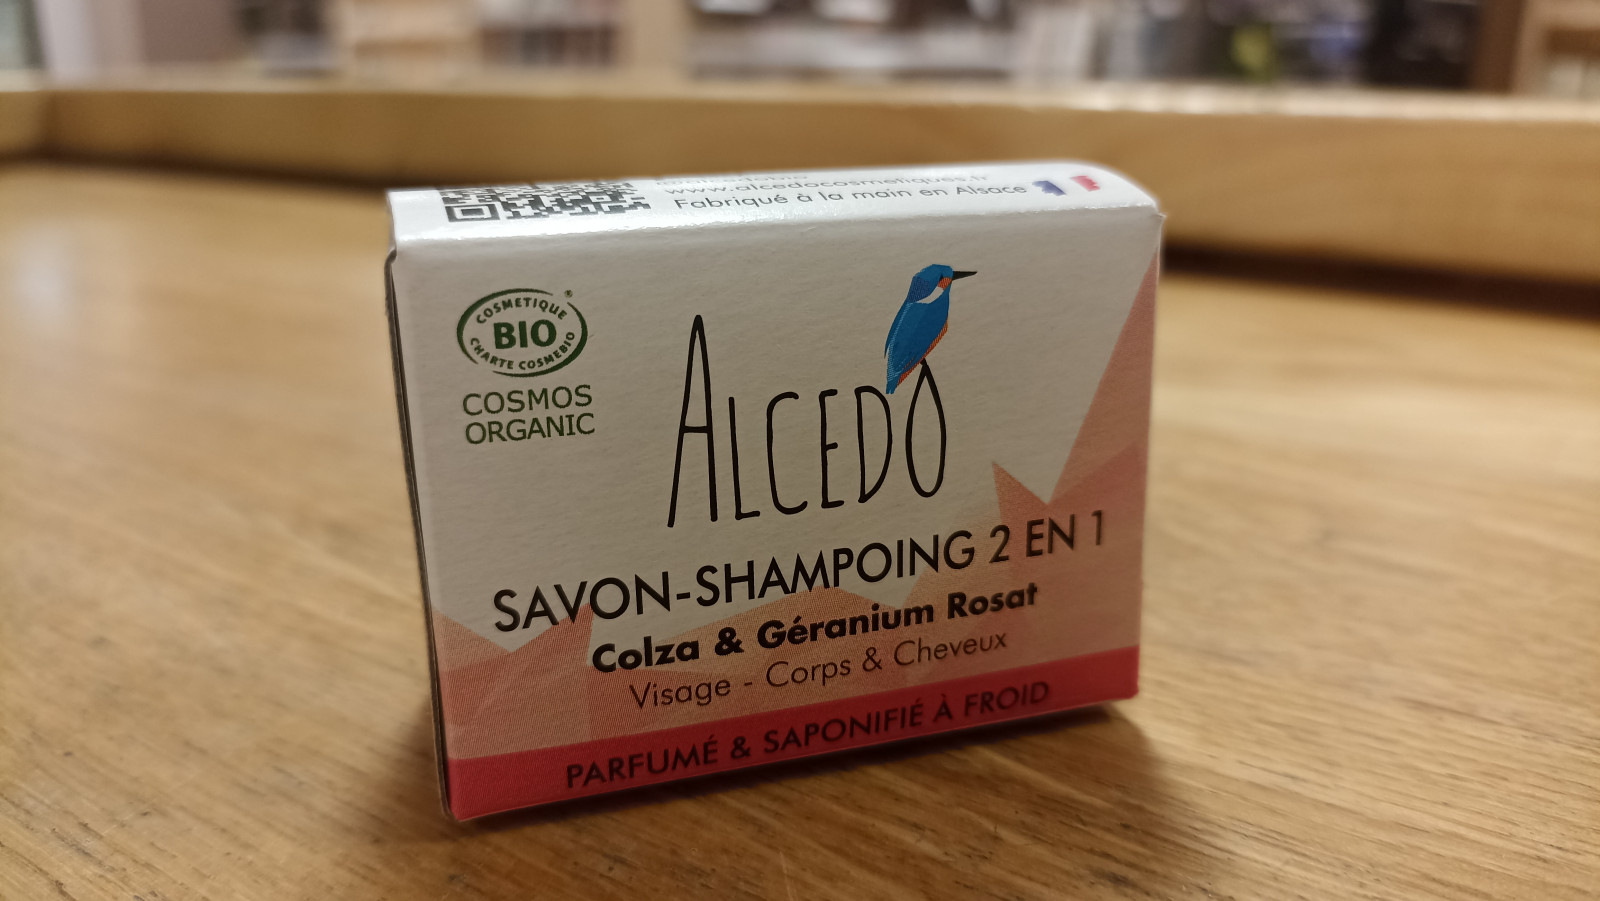 Savon shampoing 2 en 1 Colza & Géranium 50g Alcedo